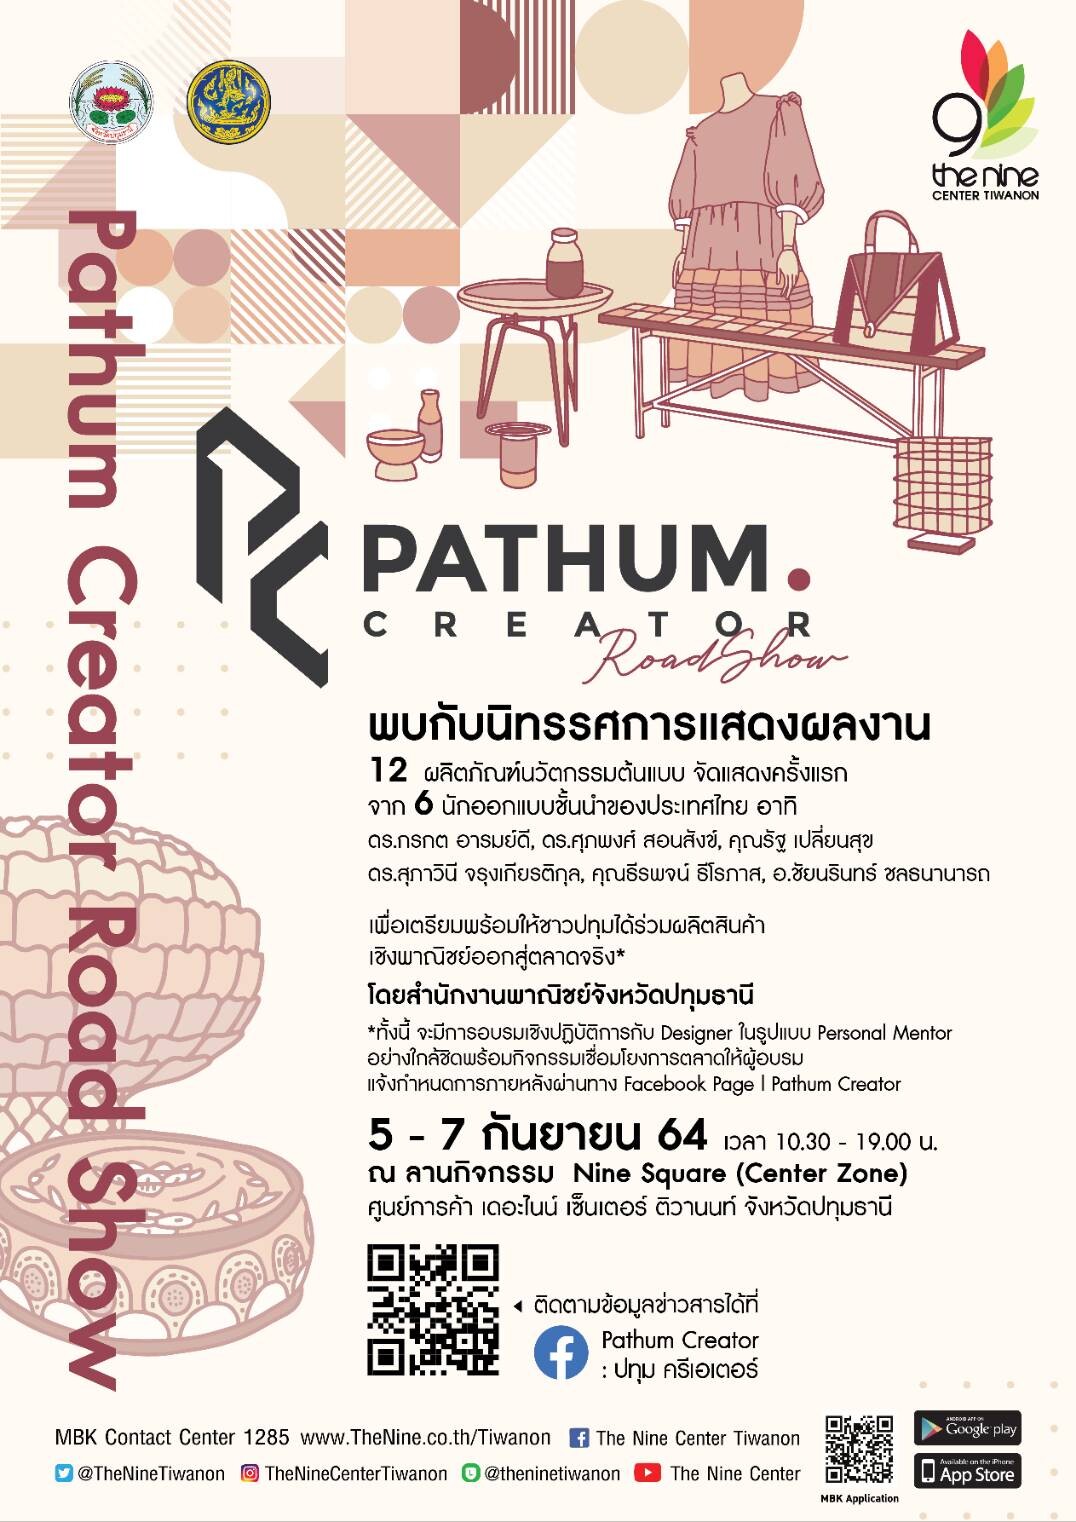 ศูนย์การค้าเดอะไนน์ เซ็นเตอร์ ติวานนท์ ร่วมกับ พาณิชย์จังหวัดปทุมธานี จัดงาน "Pathum Creator Show" เผยผลิตภัณฑ์เกษตรต้นแบบ จาก 6 นักออกแบบสินค้าระดับประเทศ